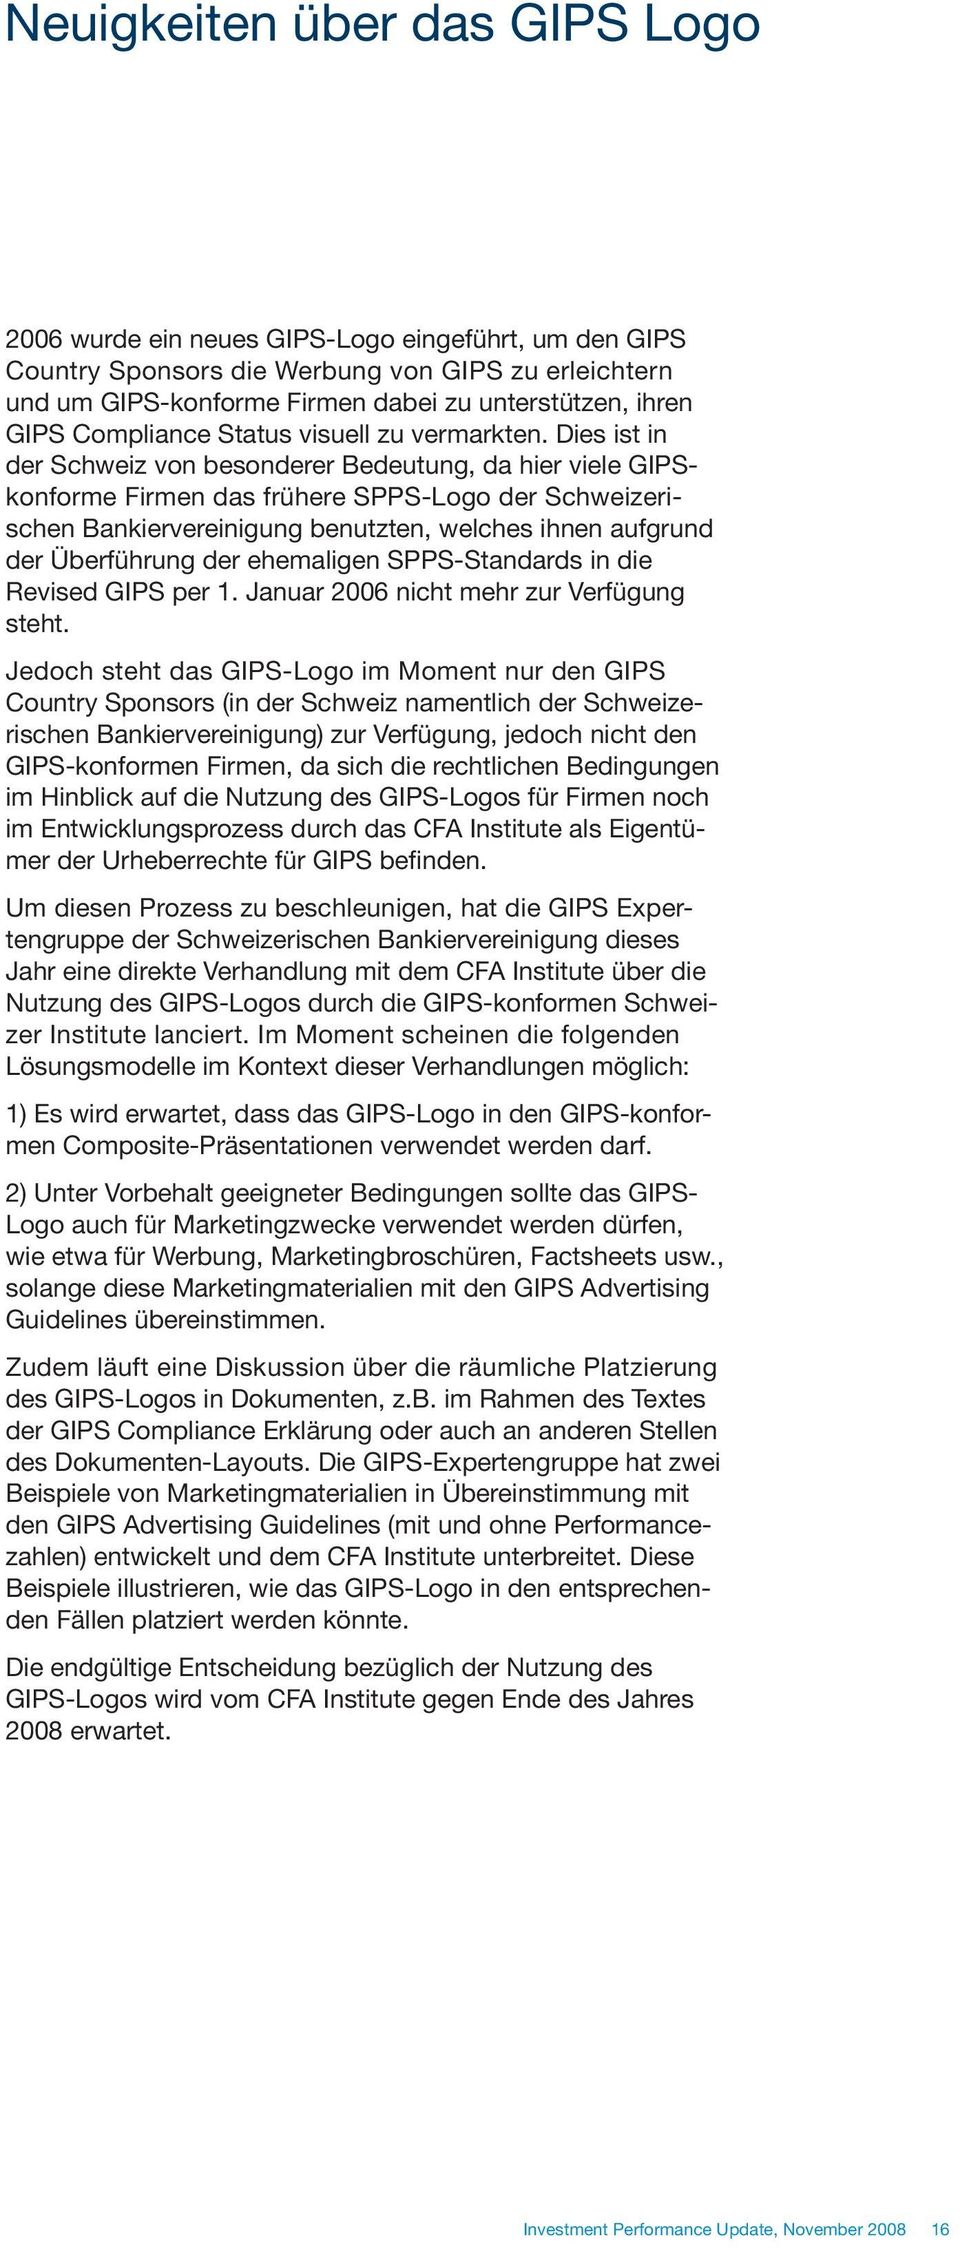 Dies ist in der Schweiz von besonderer Bedeutung, da hier viele GIPSkonforme Firmen das frühere SPPS-Logo der Schweizerischen Bankiervereinigung benutzten, welches ihnen aufgrund der Überführung der